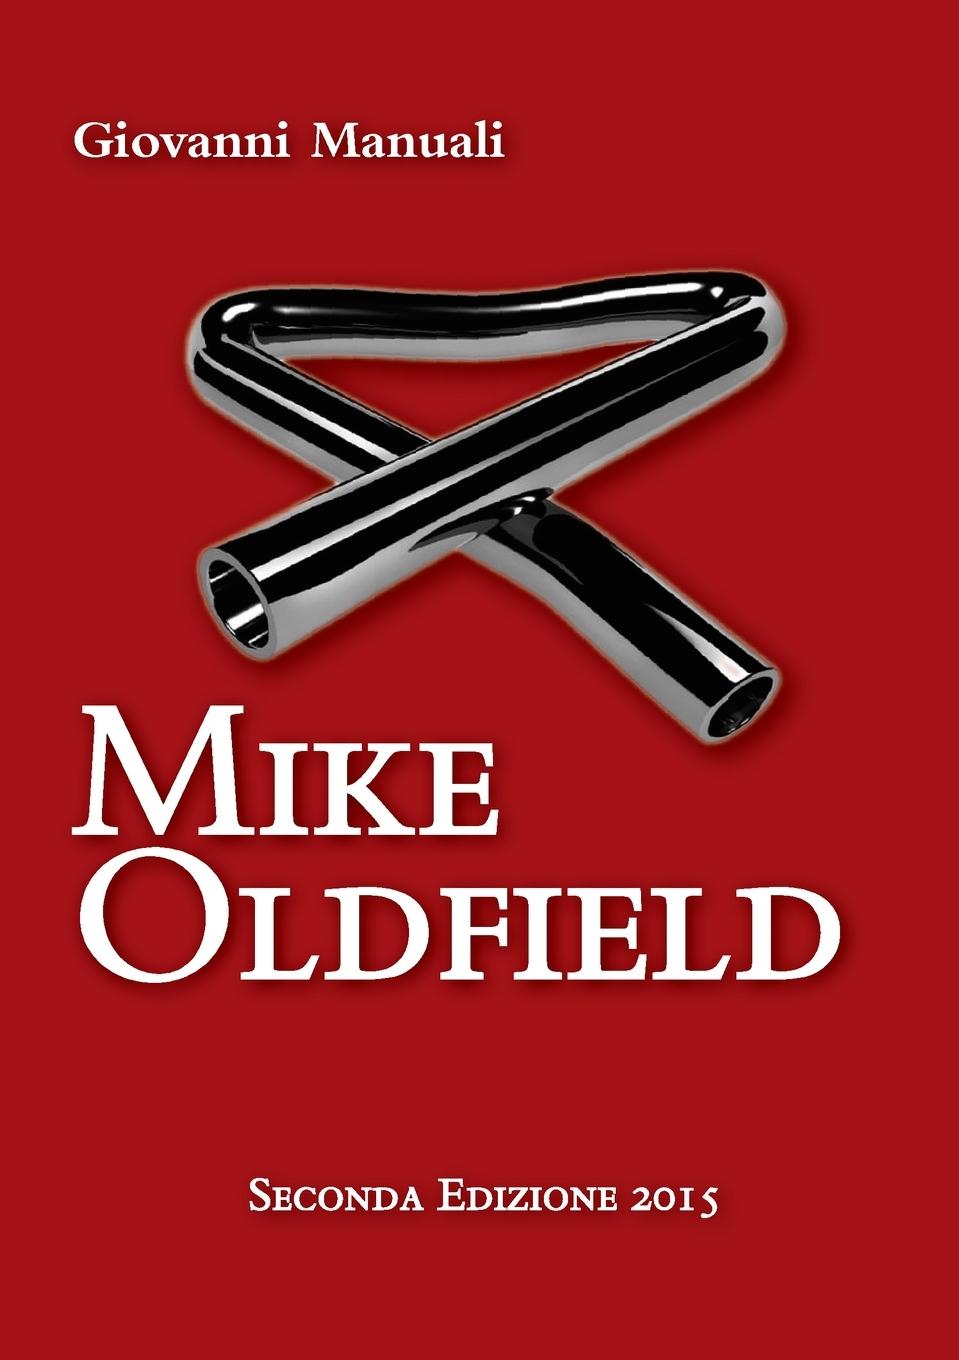 Carte Mike Oldfield - Seconda Edizione 2015 Giovanni Manuali